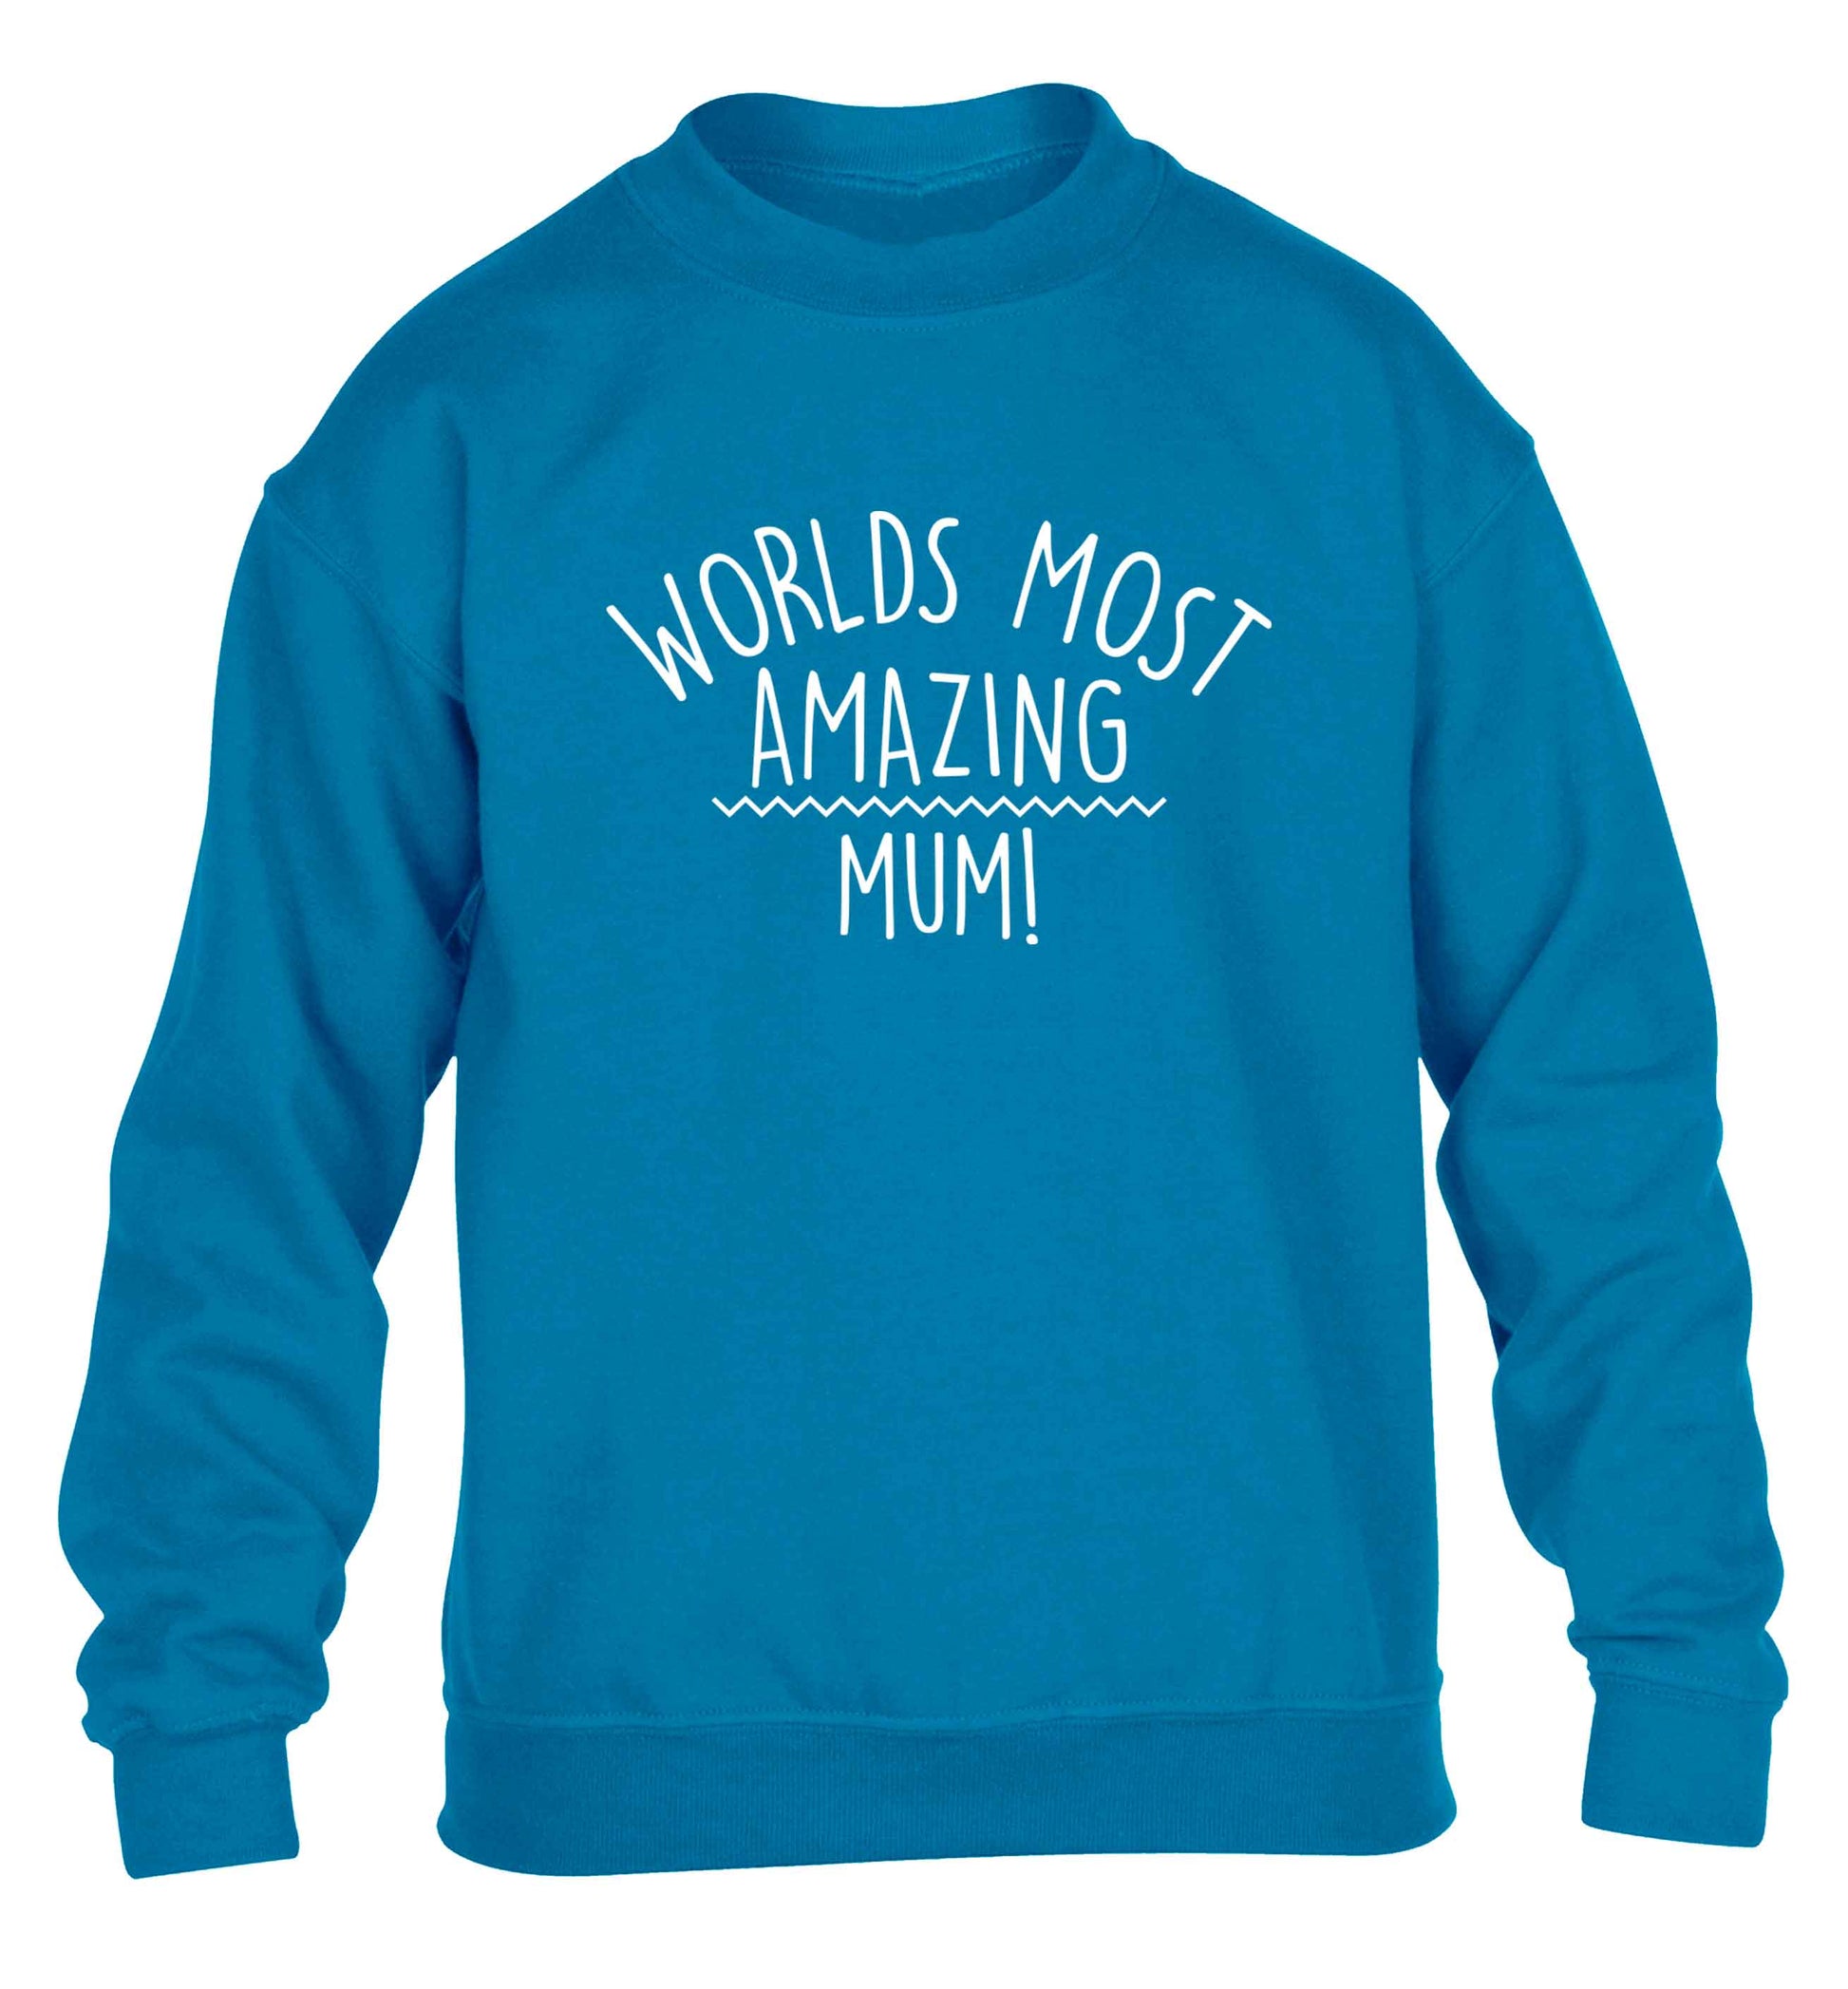 Worlds most amazing mum children's blue sweater 12-13 Years